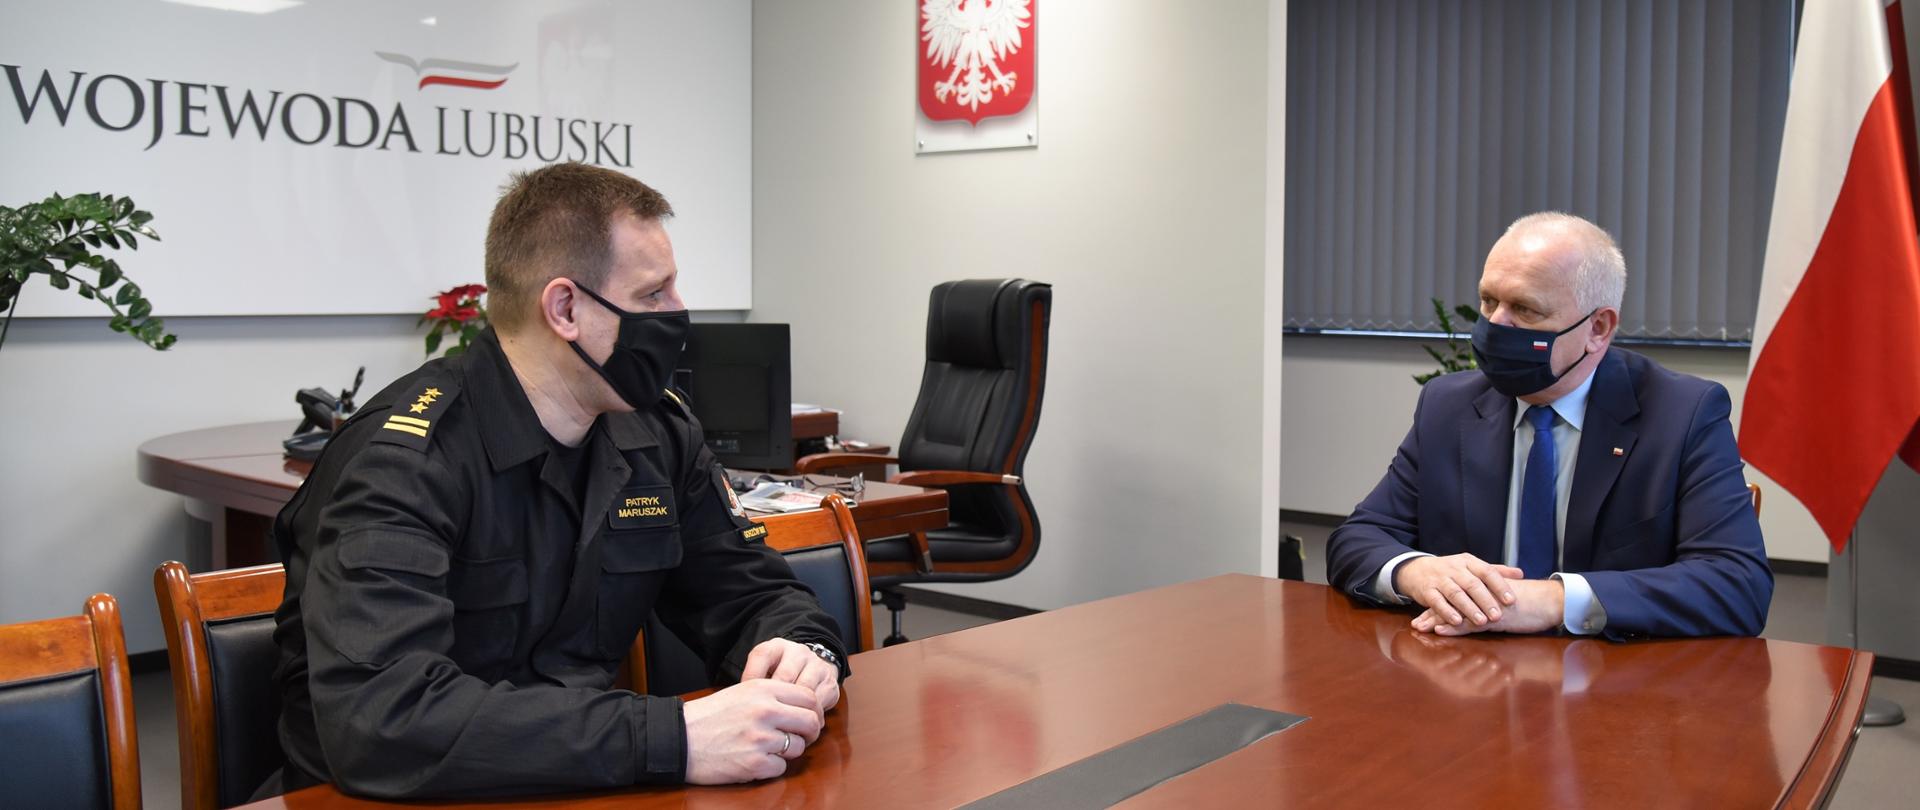 Na zdjęciu widać Lubuskiego Komendanta Wojewódzkiego Państwowej Straży Pożarnej oraz Wojewodę Lubuskiego podczas rozmowy przy stole w siedzibie LUW.